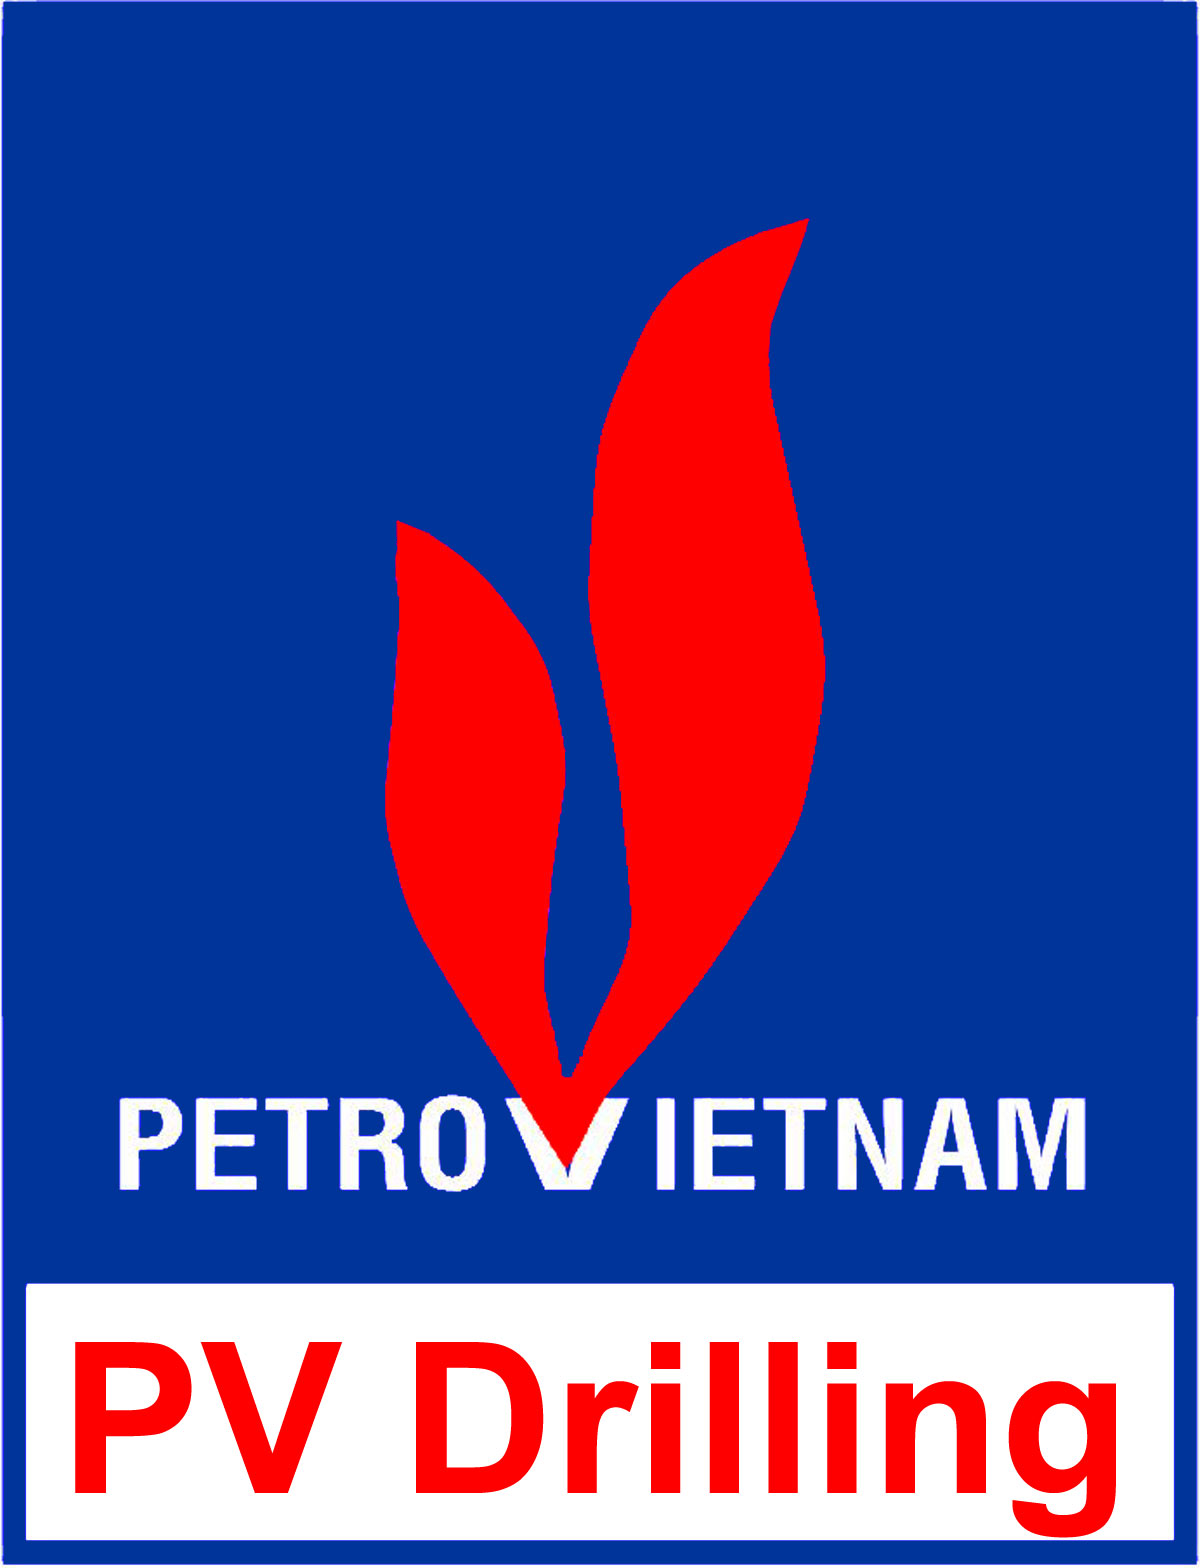 PVD: Phó TGĐ Trần Văn Hoạt đăng ký bán 21,470 cp